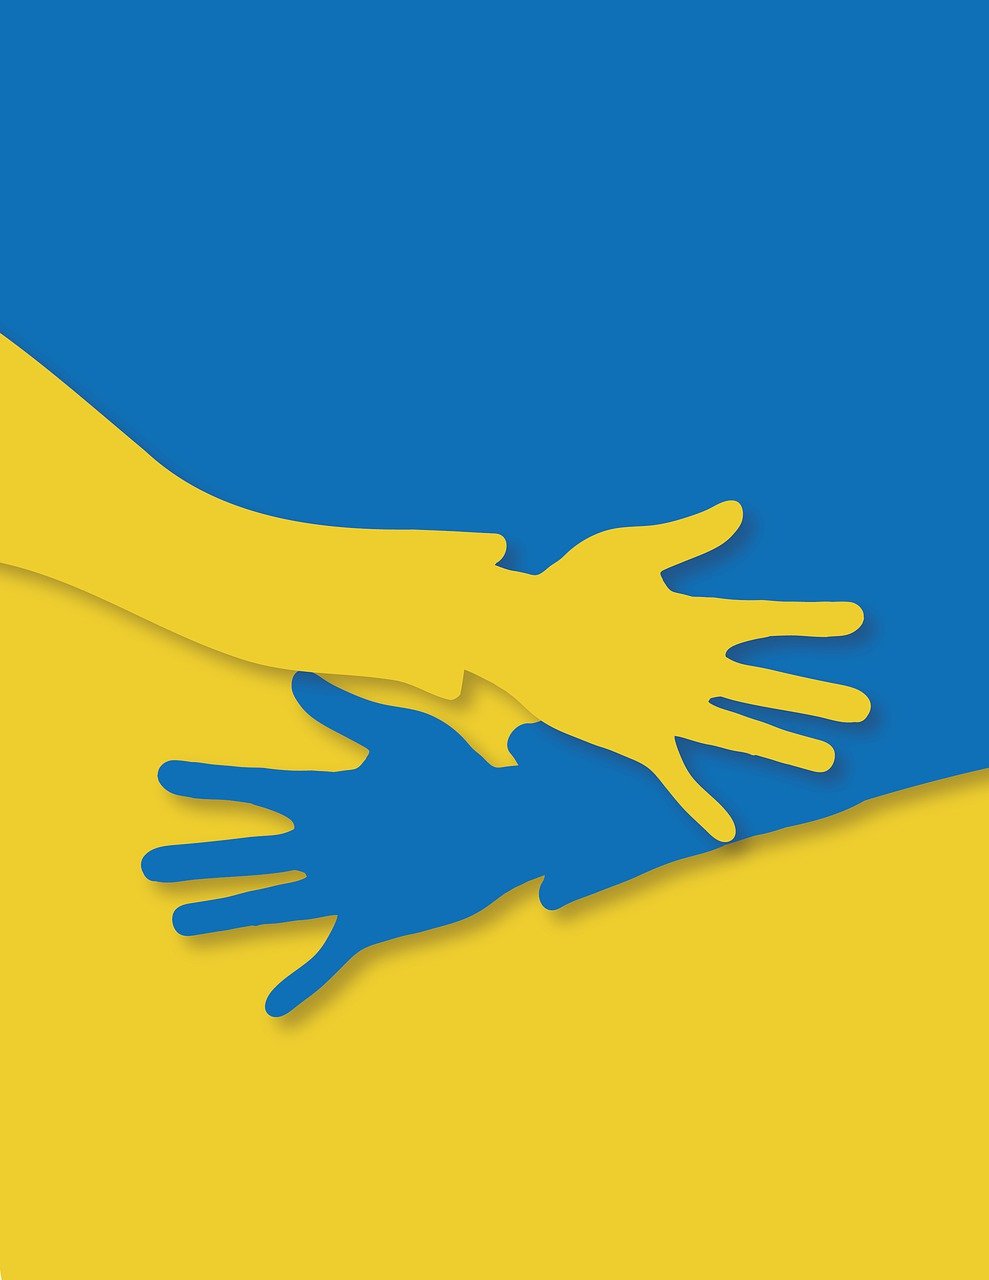 Mãos, apoio, suporte. Fonte: Pixabay